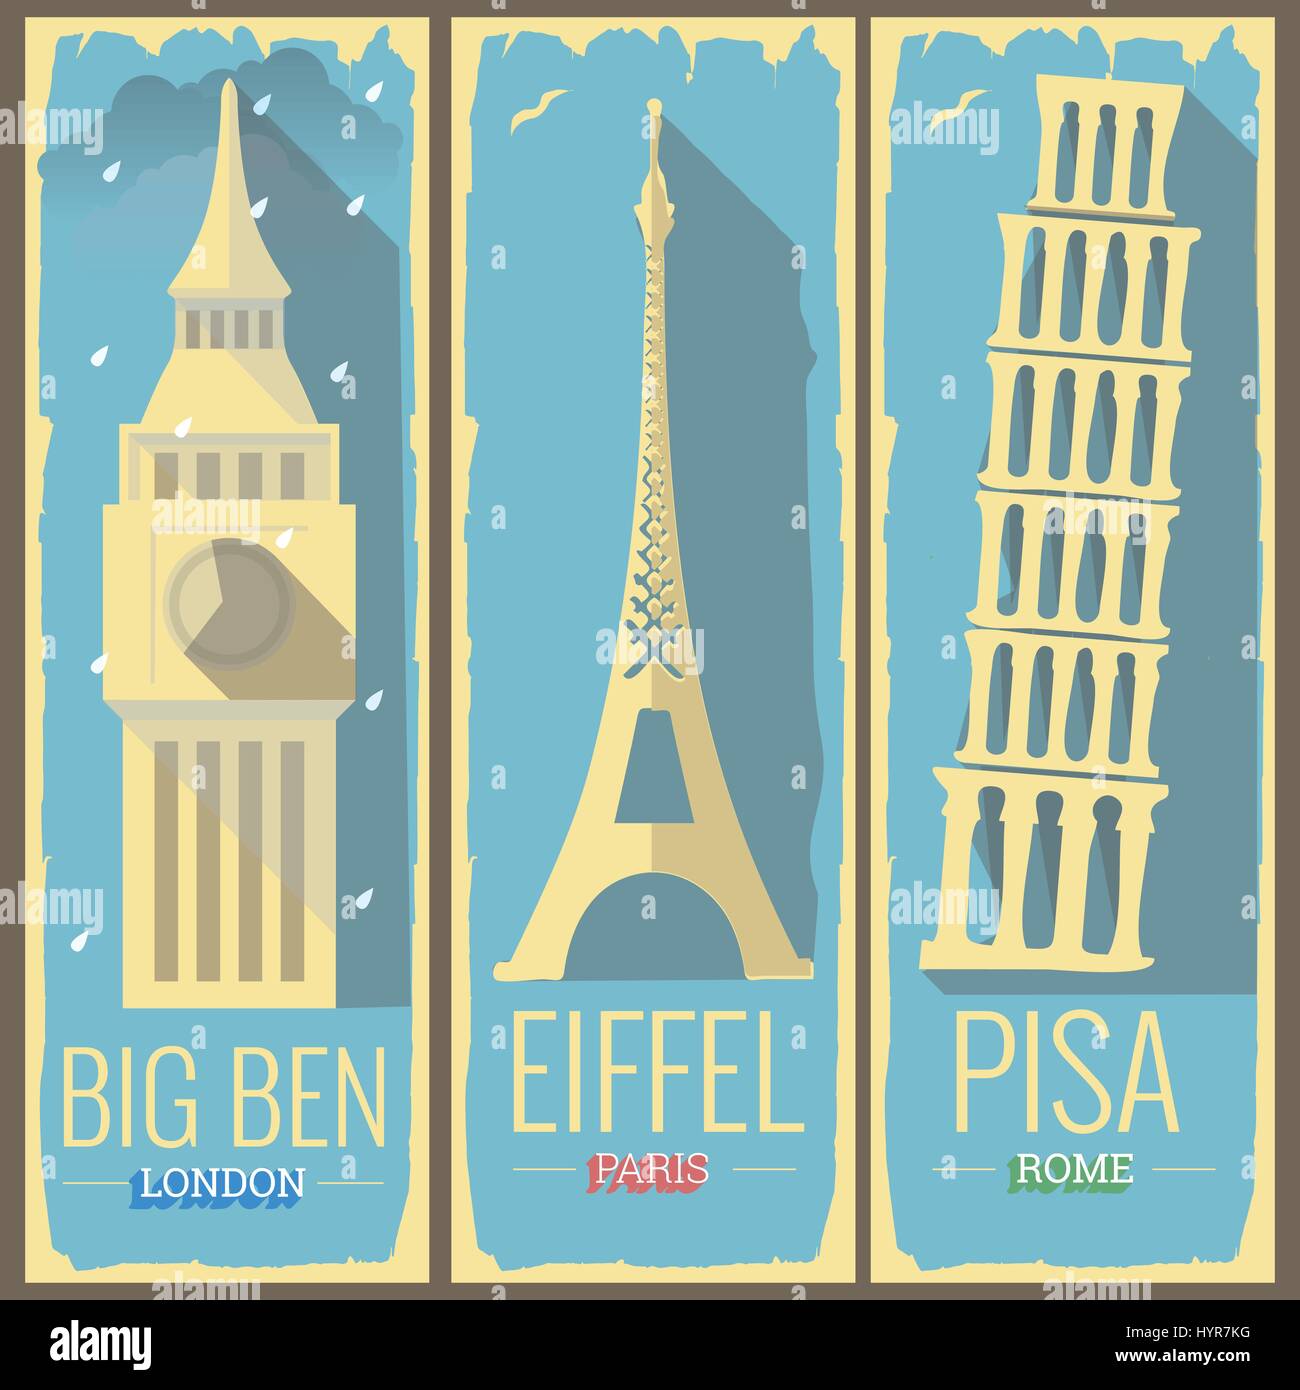 Tour de Big Ben, Londres et paris tour eiffel la tour de Pise rome style icône illustrations sur retro vintage poster design de carte postale Illustration de Vecteur